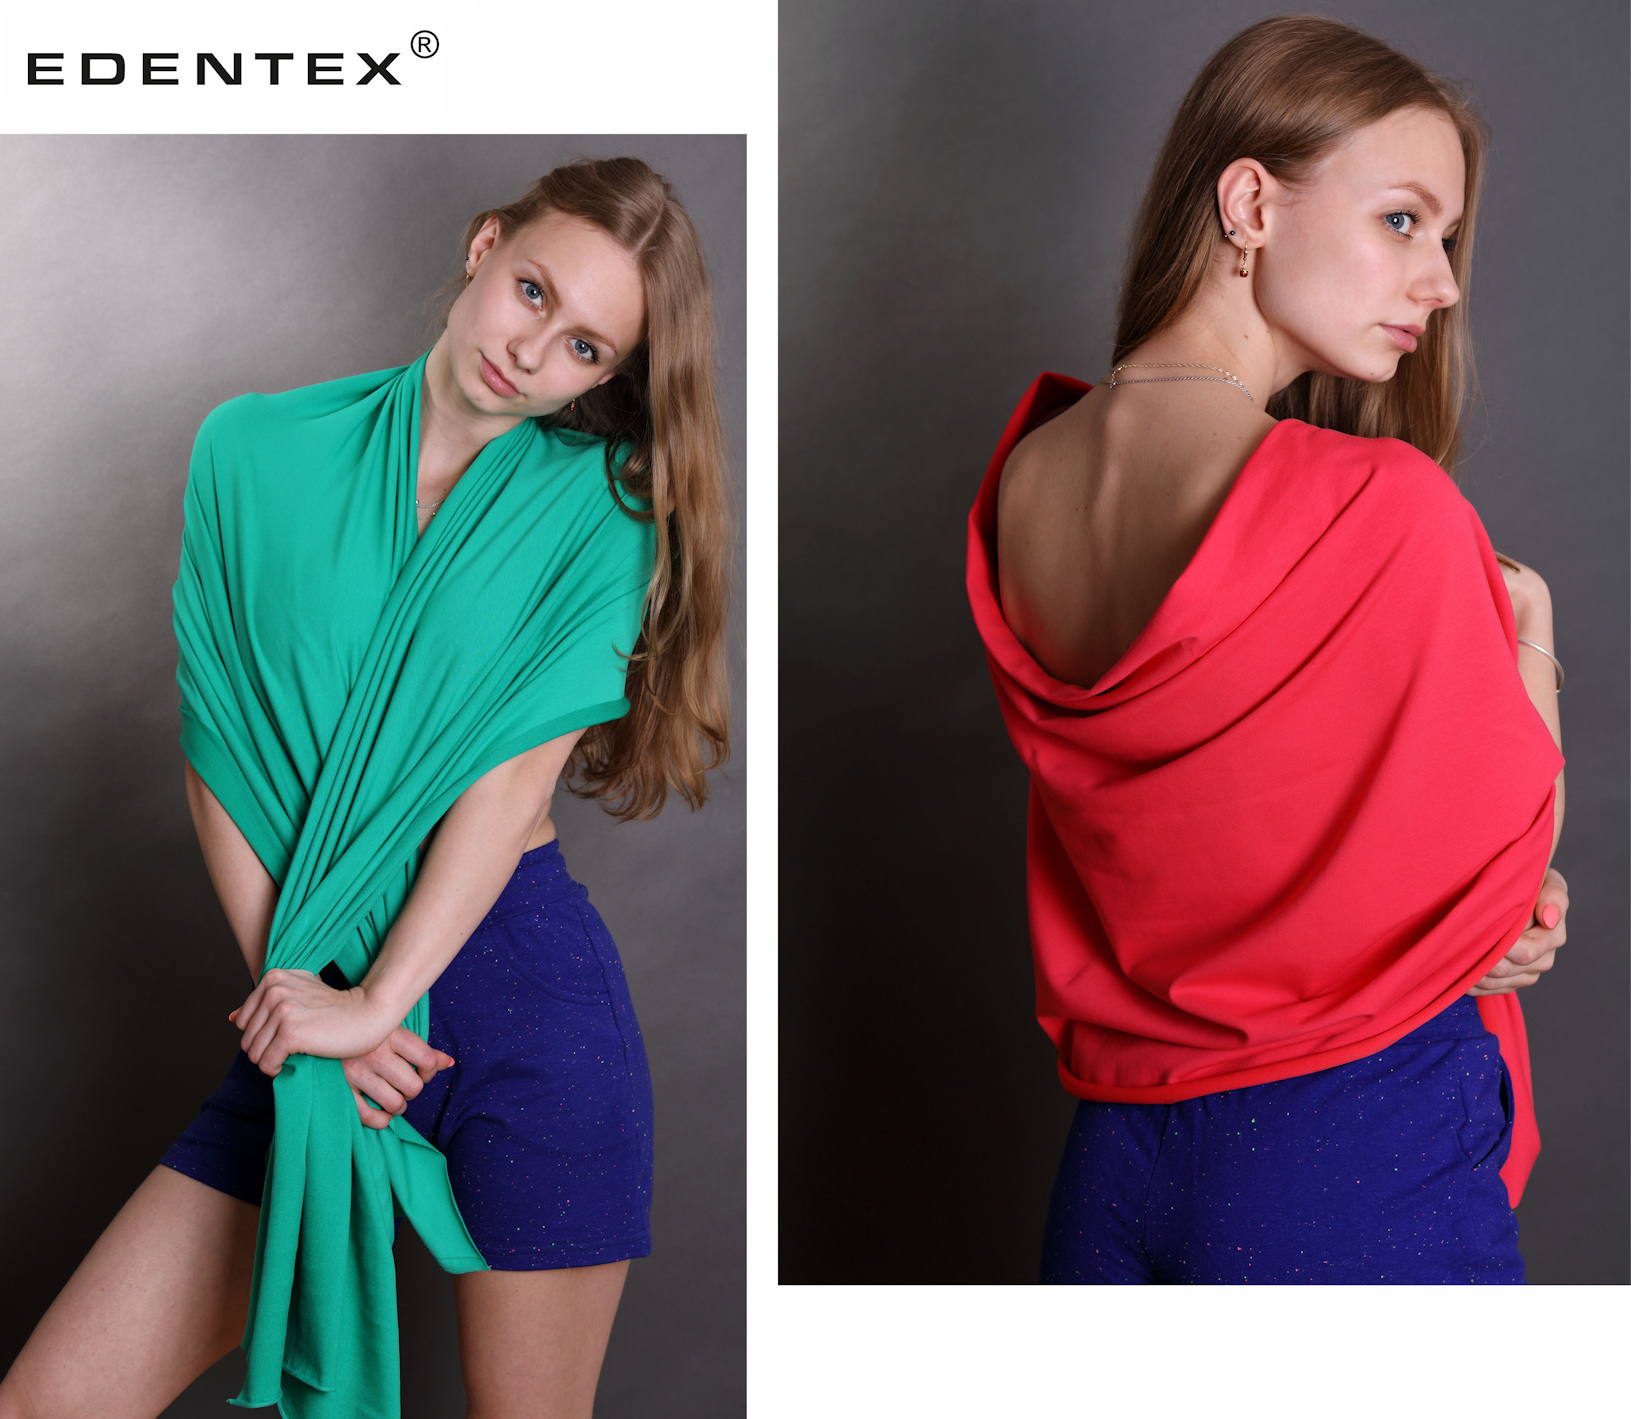 Sukces marki EDENTEX® wynika z dwóch czynników: zamiłowania do pięknych i trwałych materiałów oraz miłości do bawełny